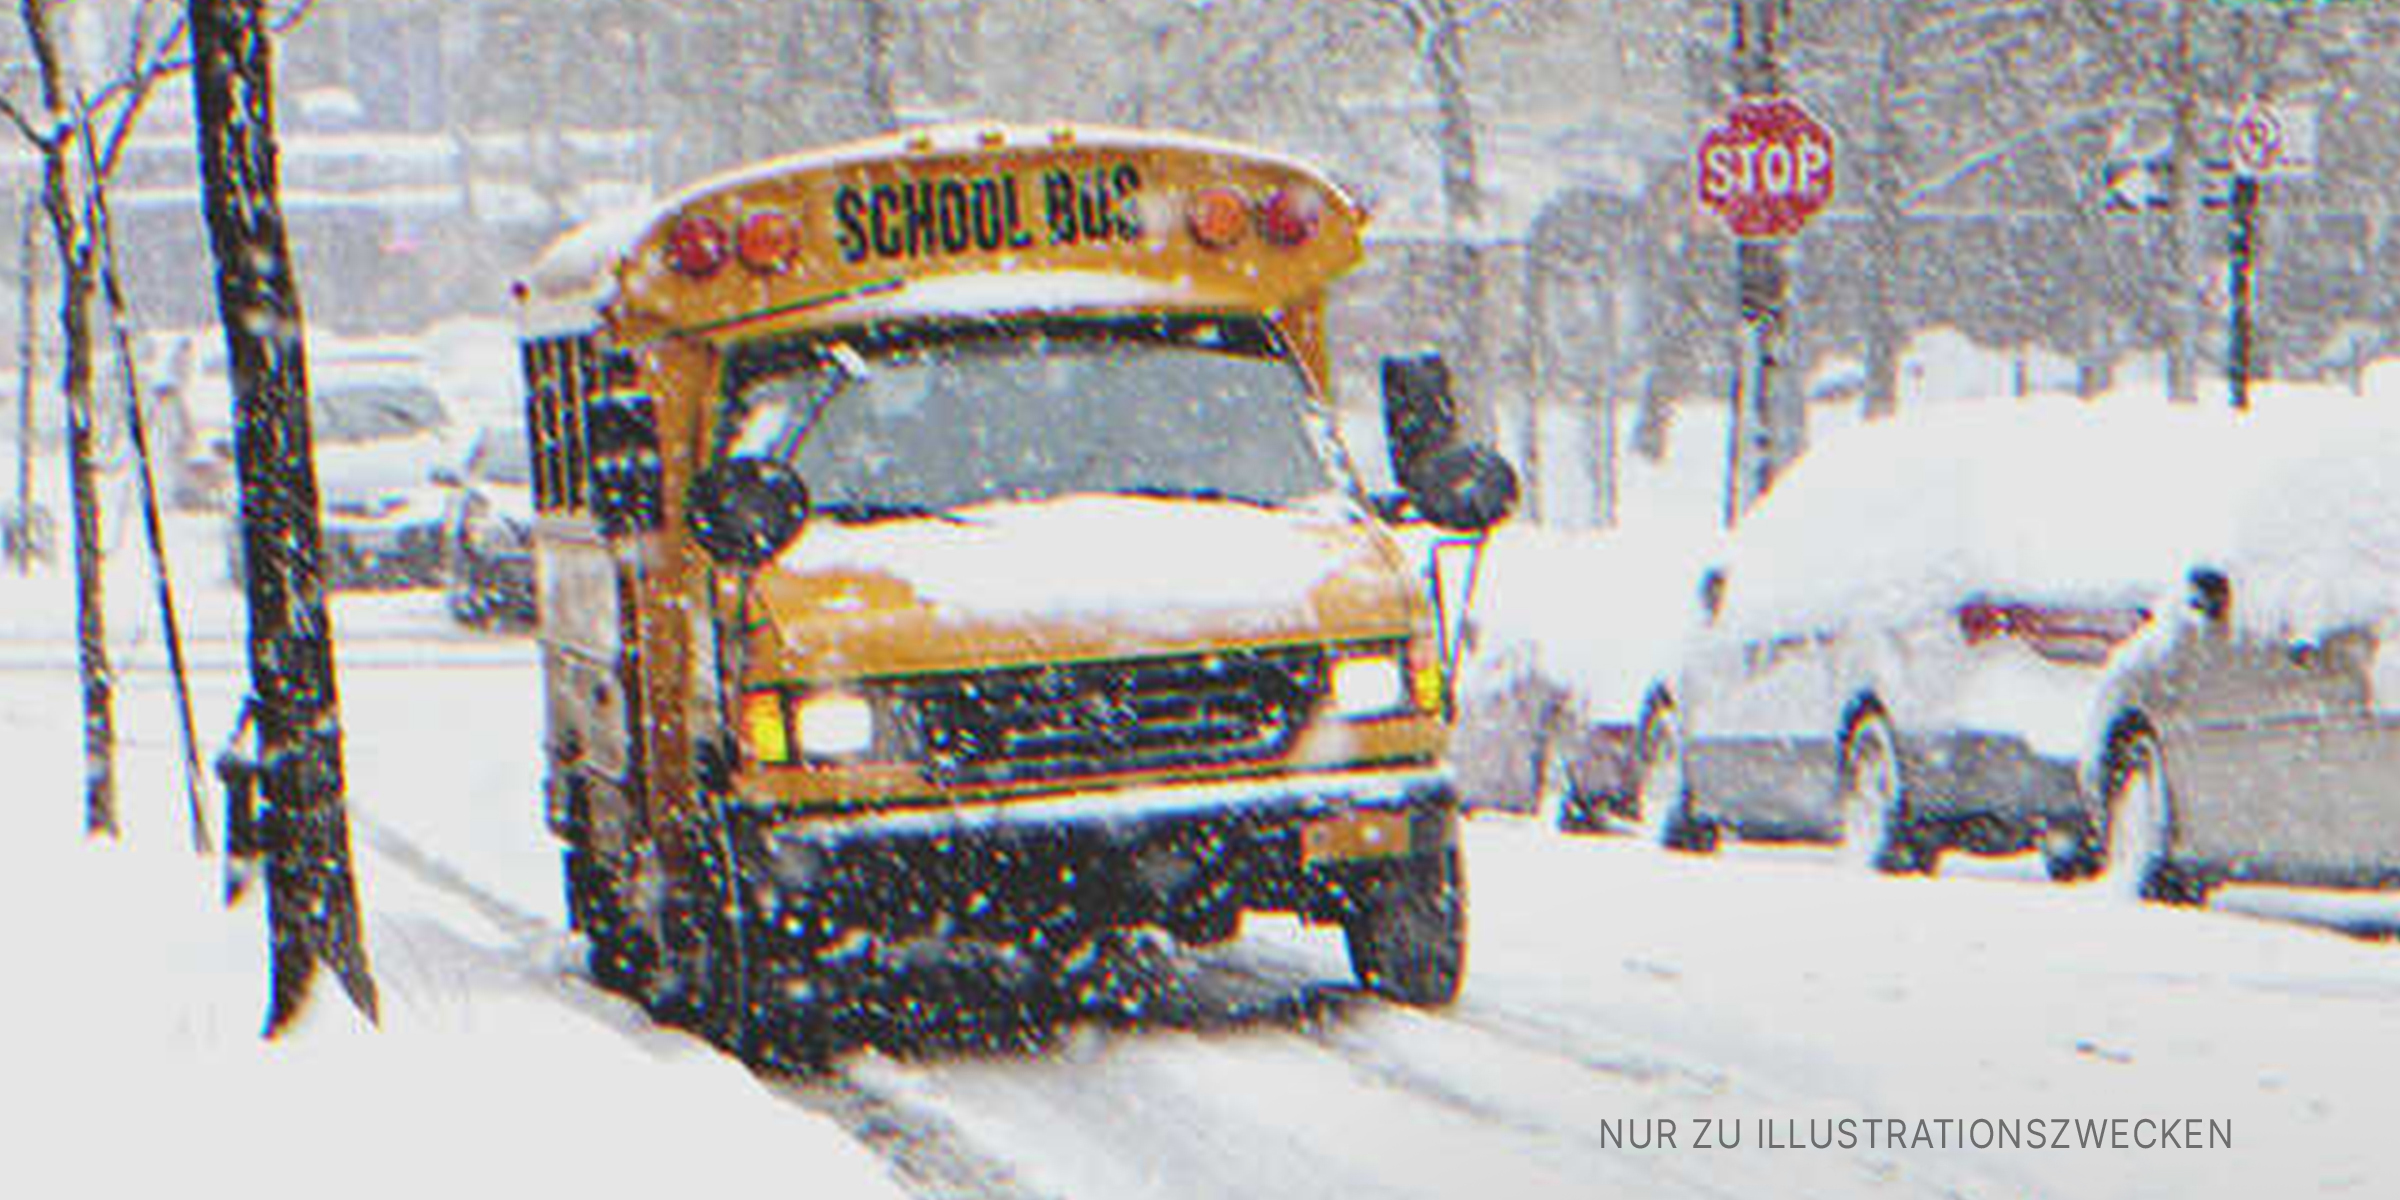 Bus auf der Straße bei winterlichem Wetter geparkt. | Quelle: Shutterstock